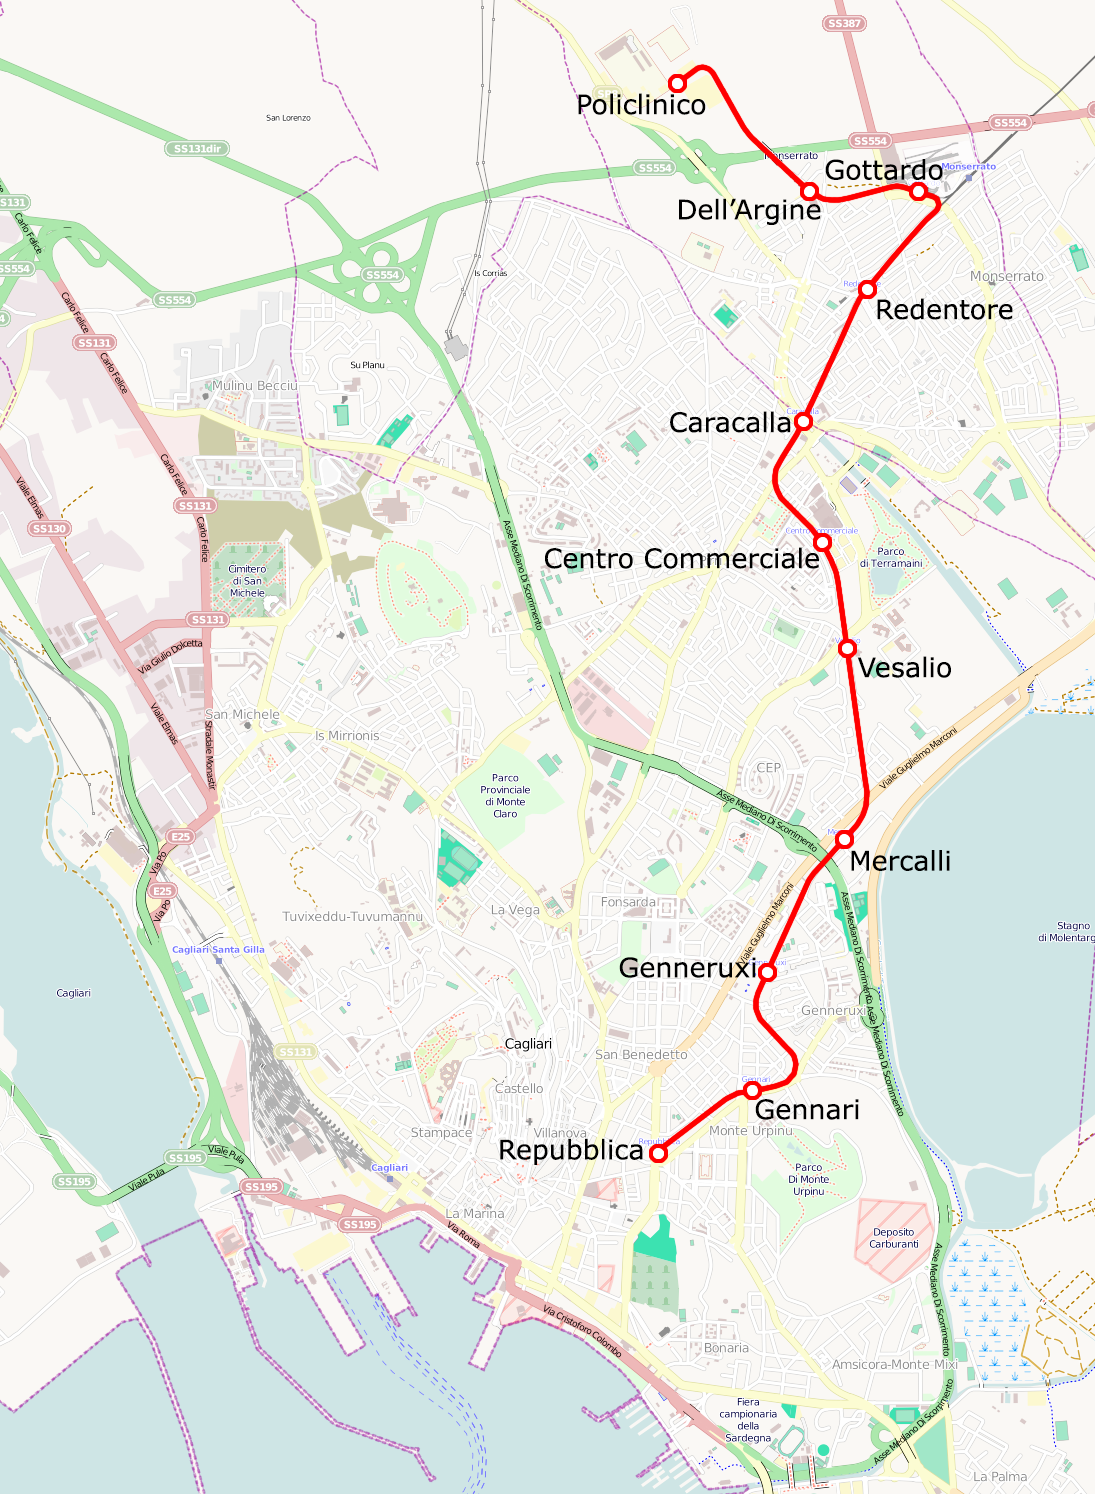 La mappa di MetroCagliari con il prolungamento della linea 1 tra San Gottardo e Policlinico – da Wikipedia "Cagliari mappa metro" di Roberto Mura - licenza CC BY-SA 4.0 tramite Wikimedia Commons 